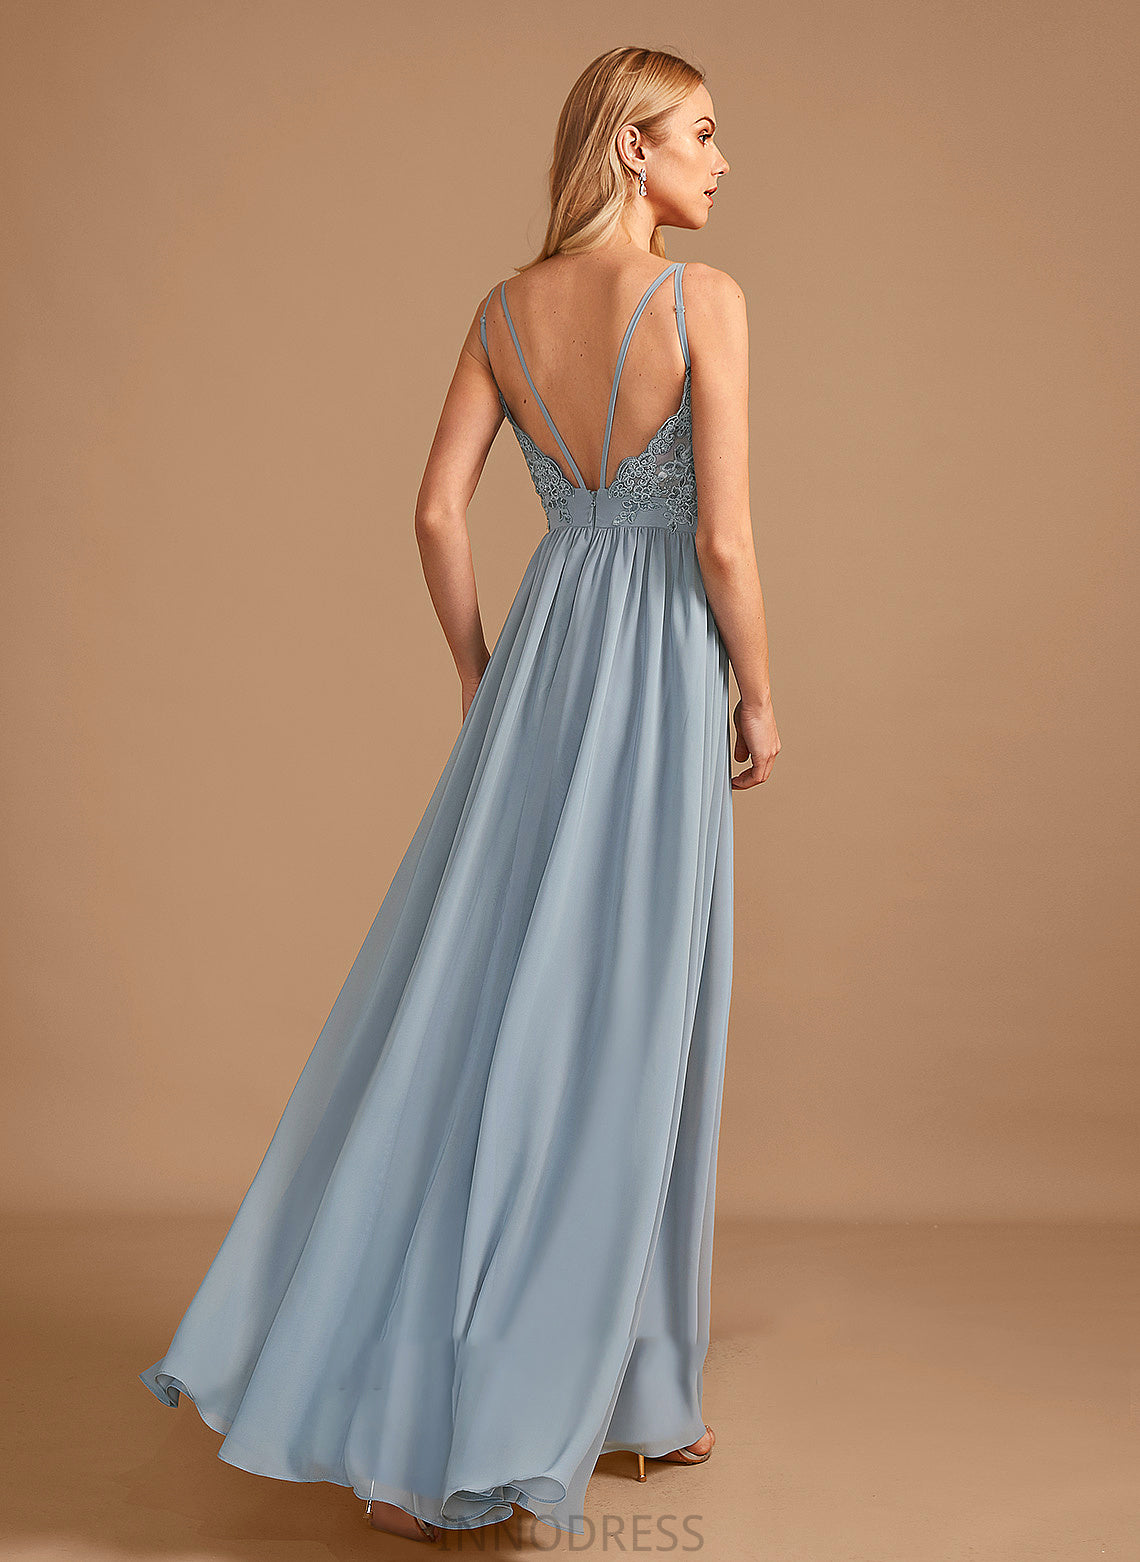 A-Line Fabric Neckline V-neck Ruffle Floor-Length Silhouette Length Embellishment Briana A-Line/Princess Straps